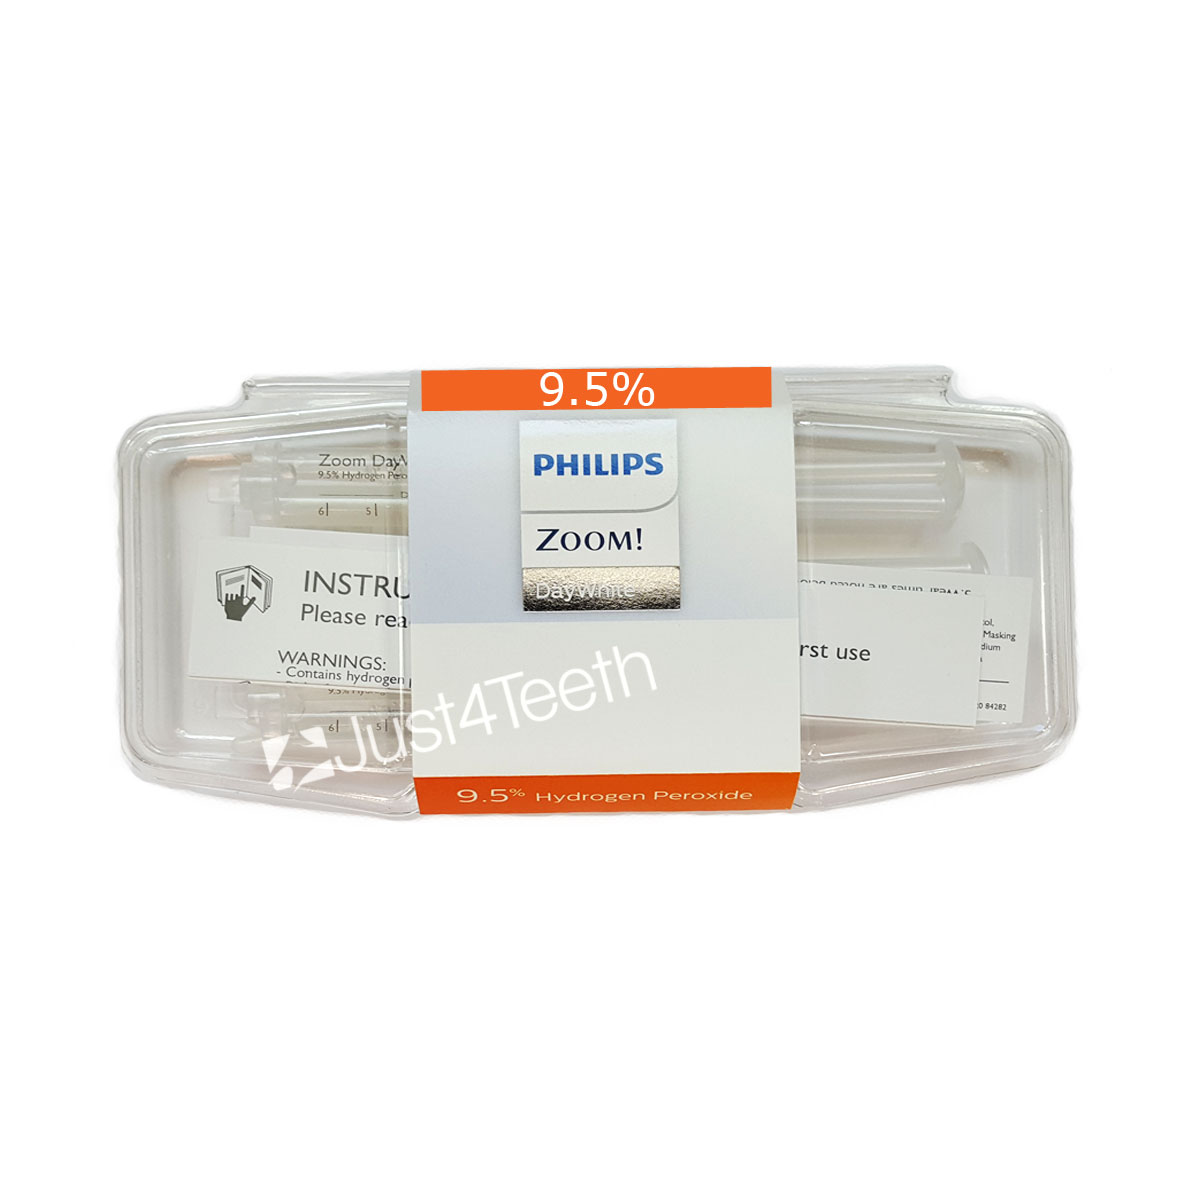 Zoom DayWhite 9.5% Box -10 3-Syringe Refill